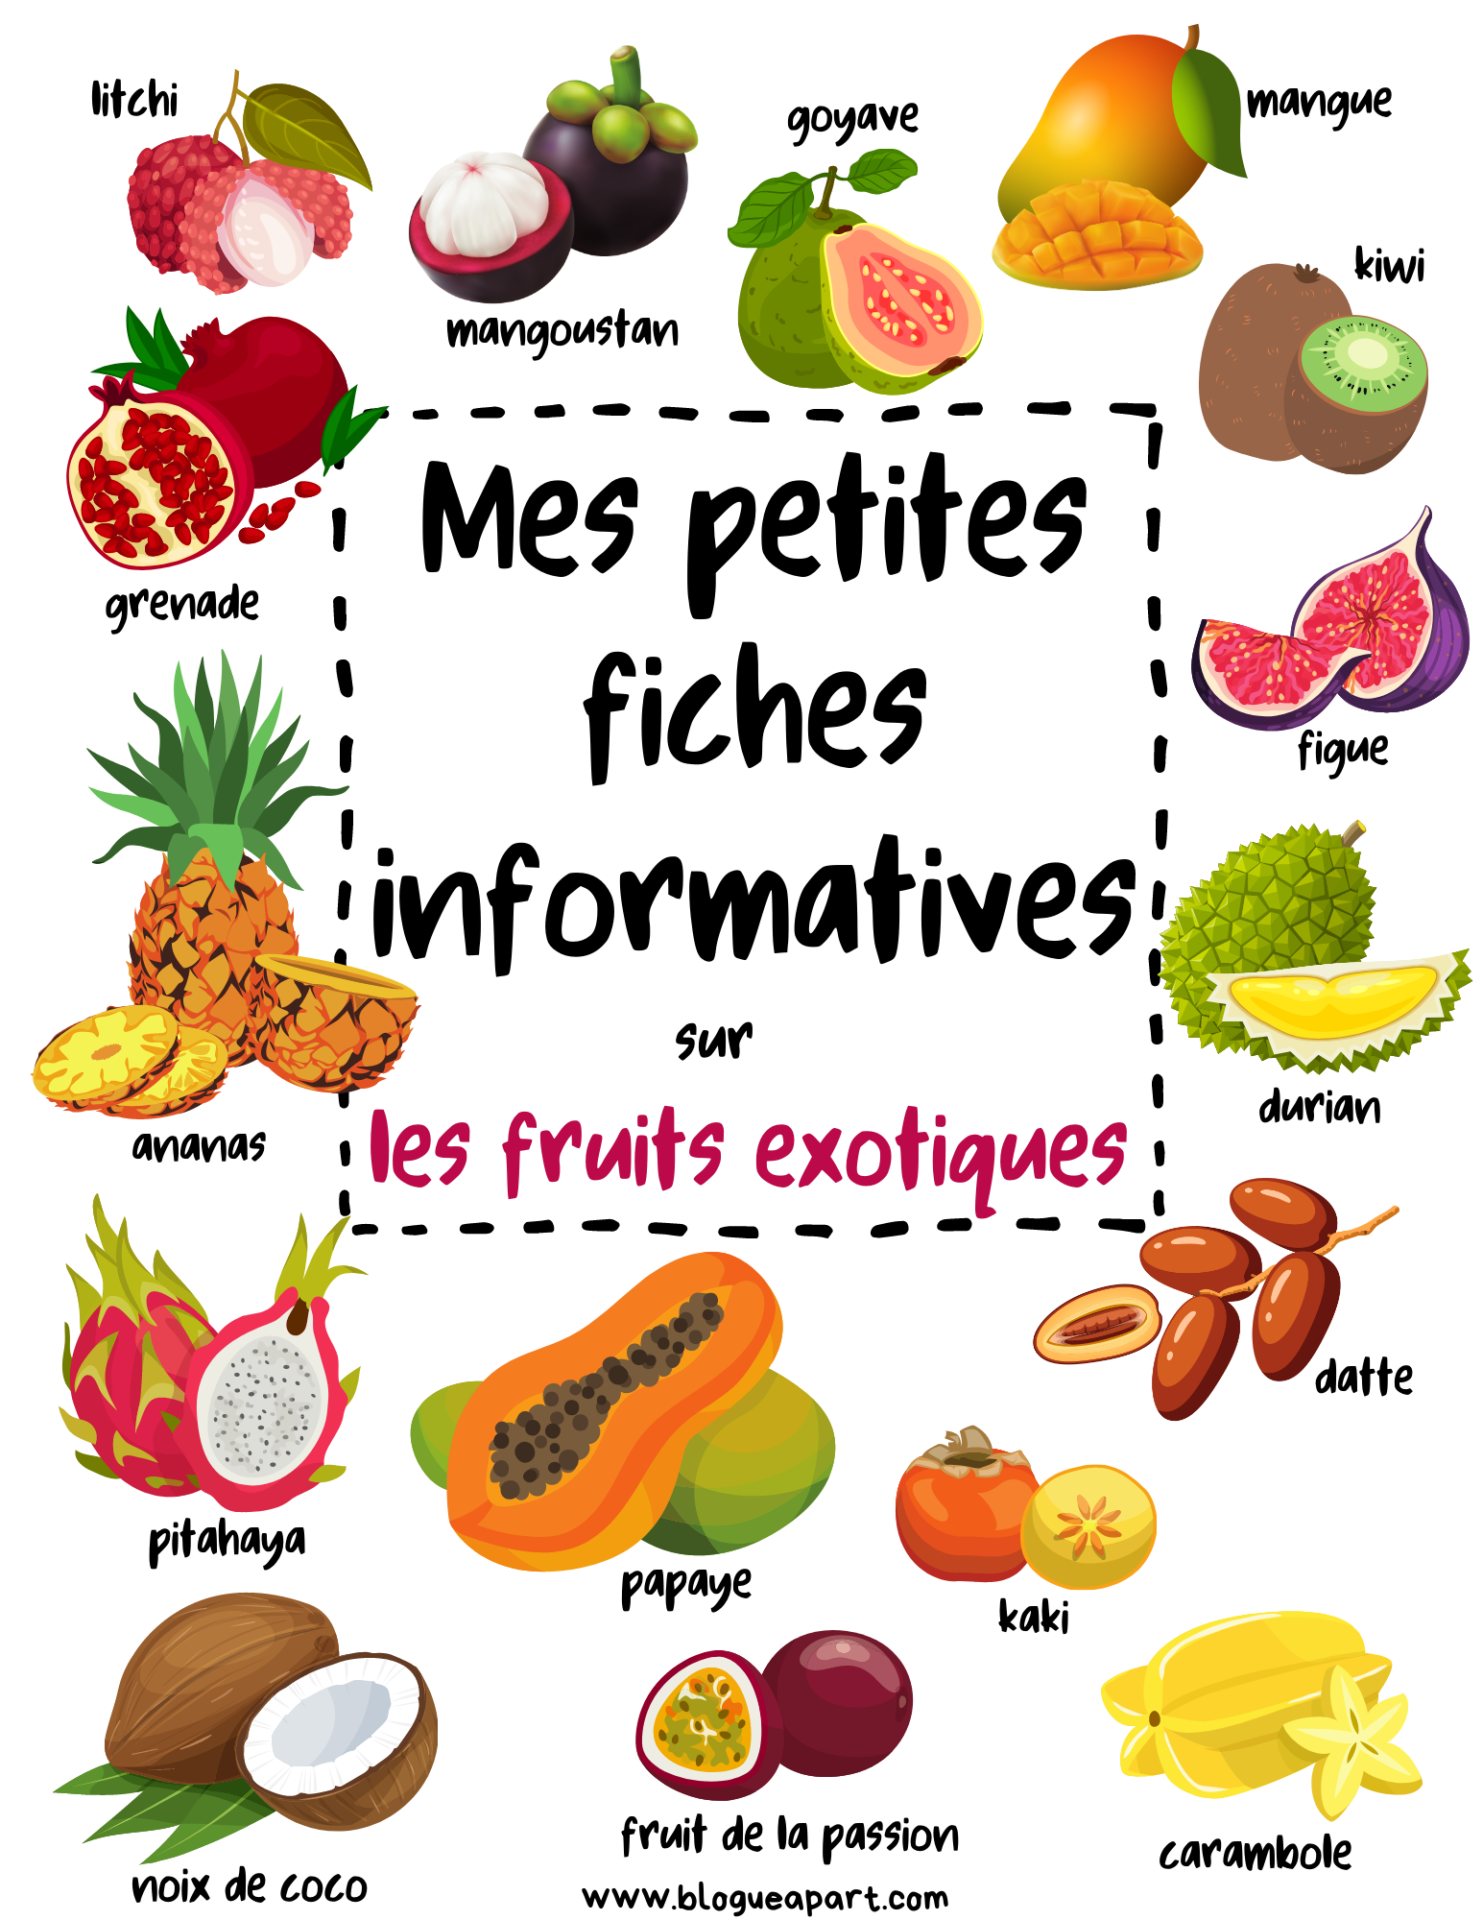 Comment classe-t-on les fruits et légumes par famille ? Actinutrition